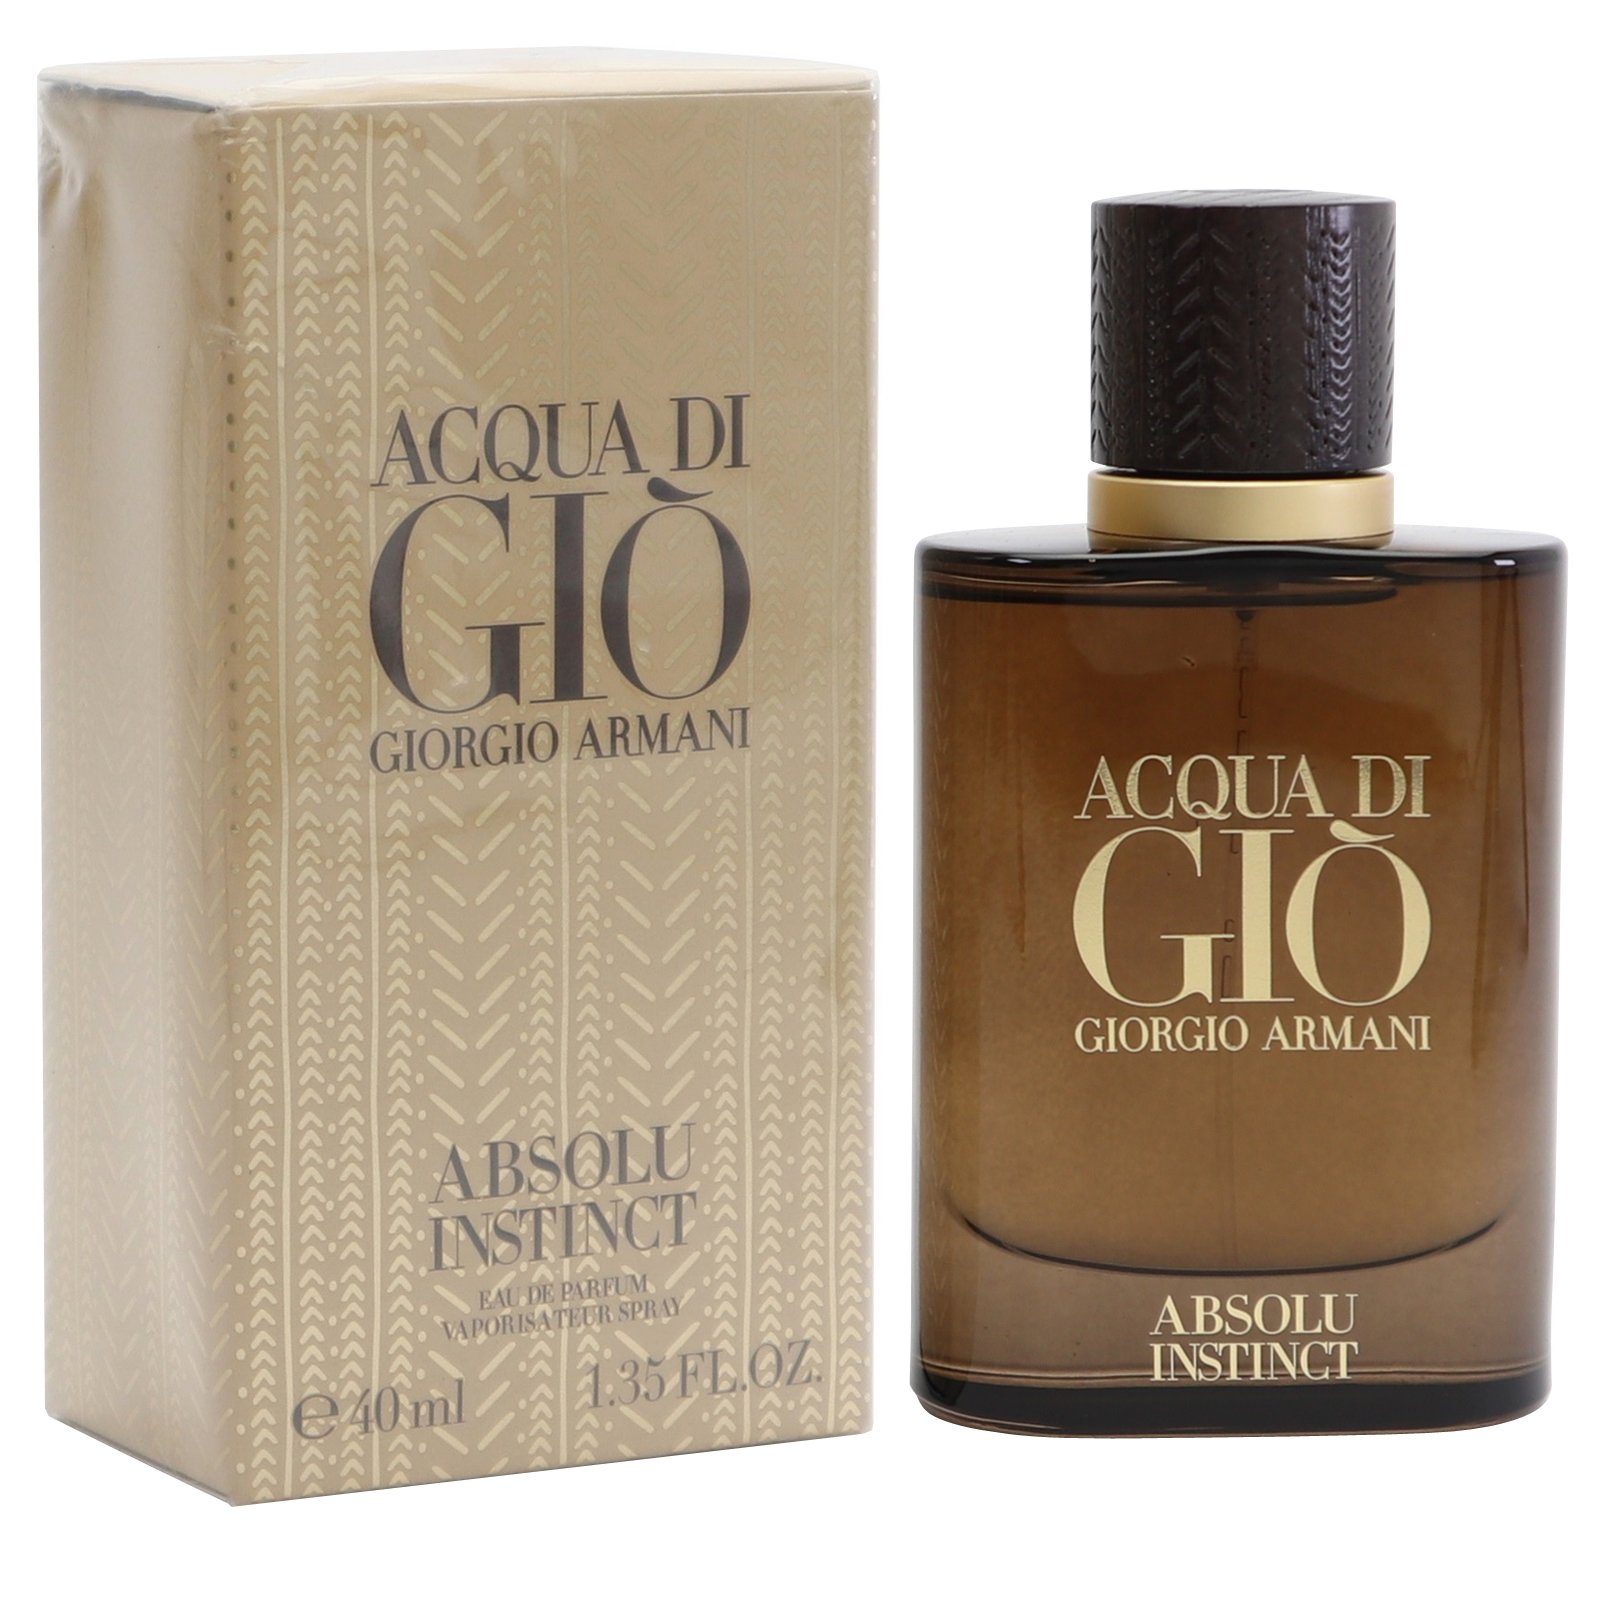 Armani Armani Gio Giorgio Instinct Eau Parfum Giorgio di Acqua ml Parfum de Eau de 40 Spray Absolu